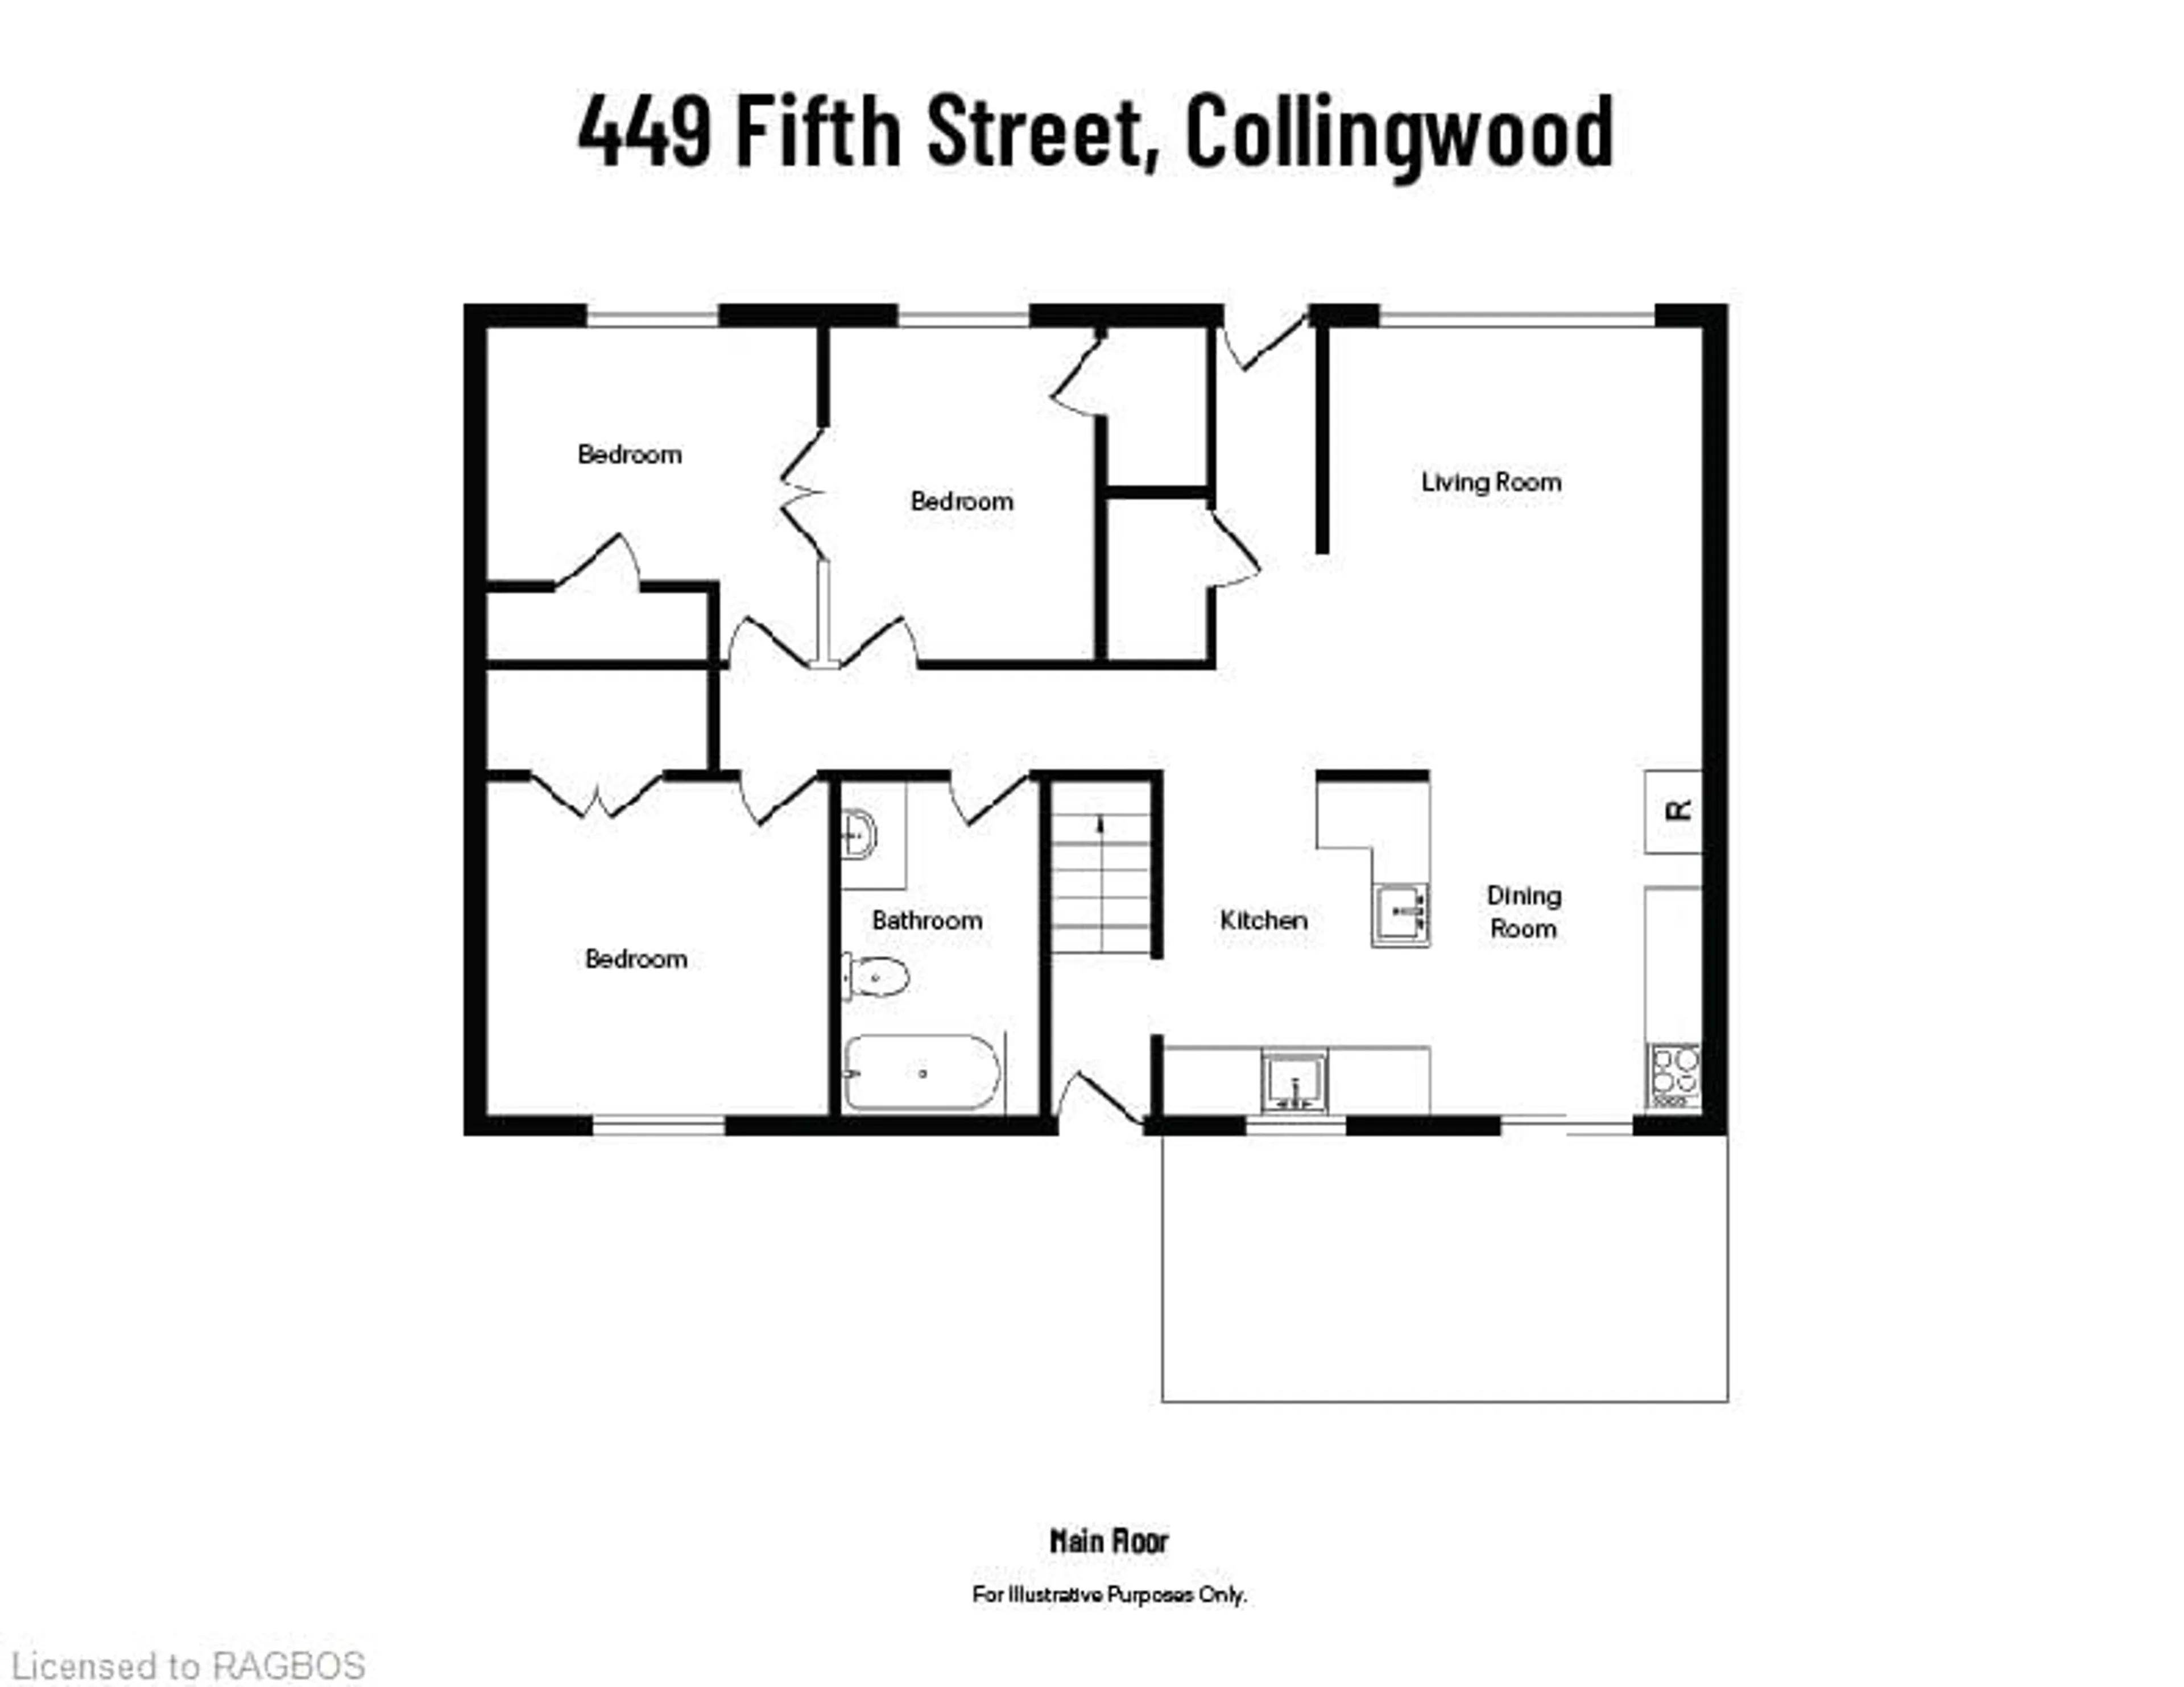 Floor plan for 447 Fifth St, Collingwood Ontario L9Y 1Y5